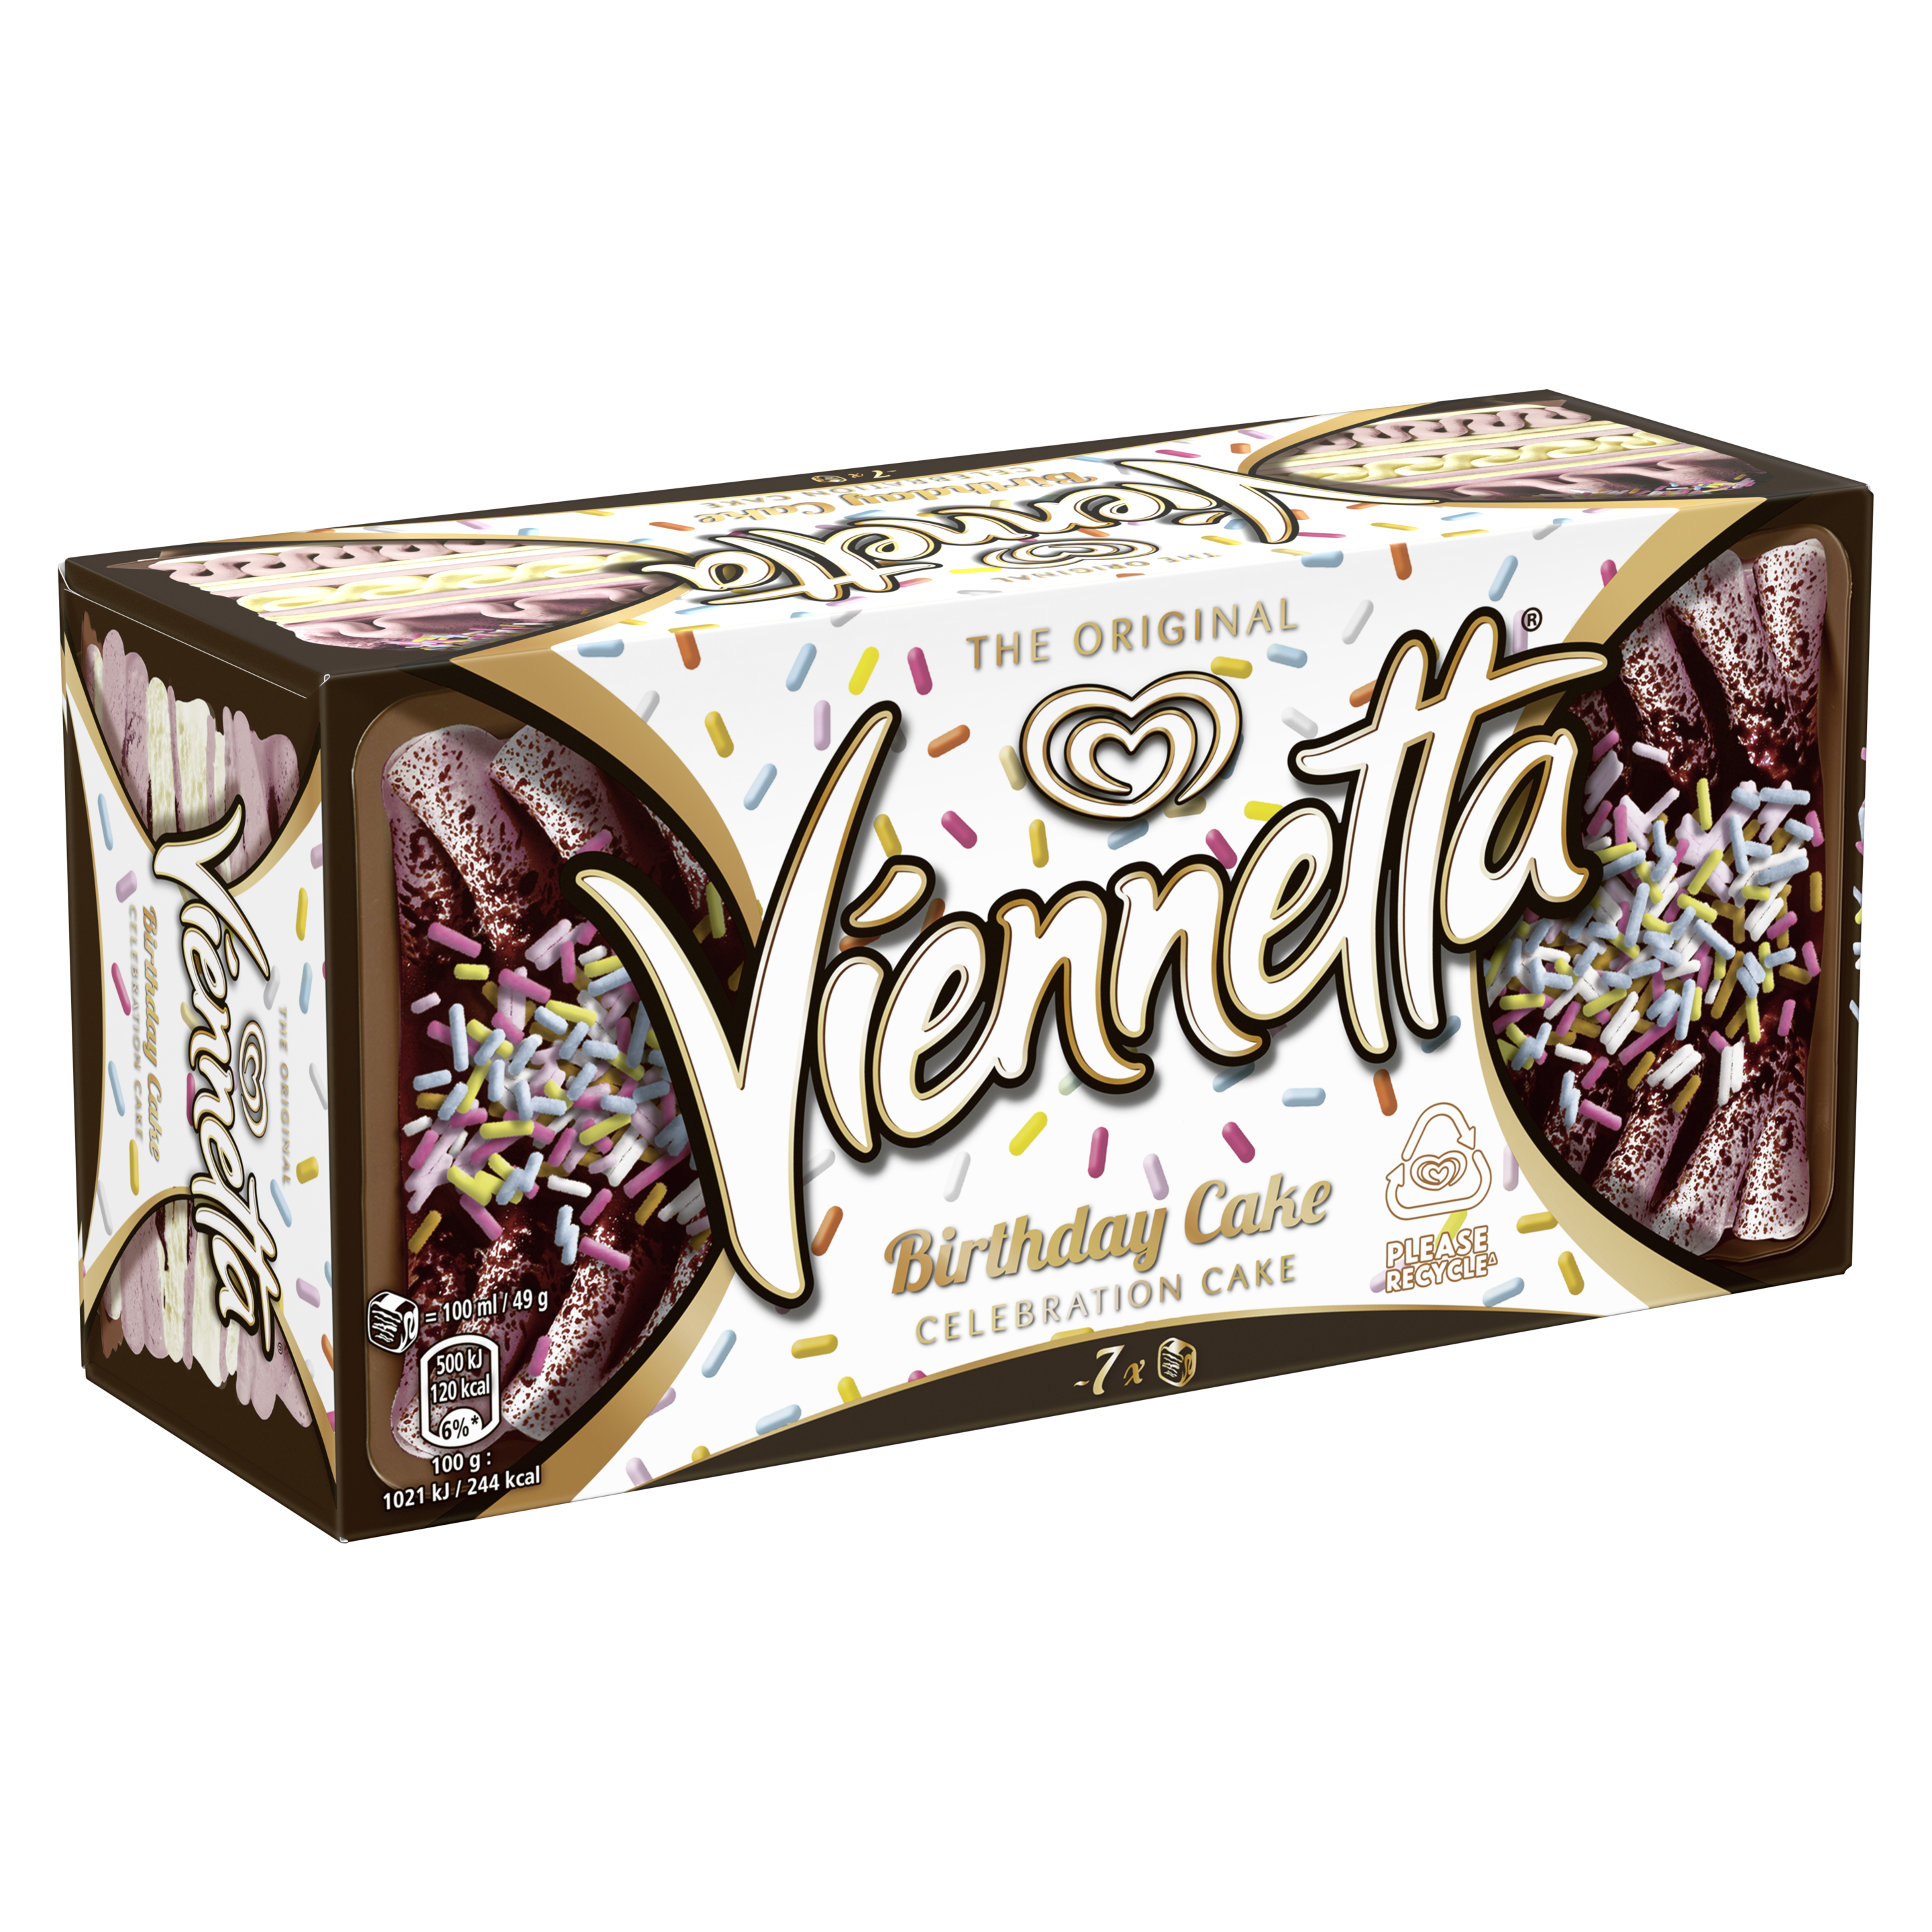 Viennetta Birthday Cake